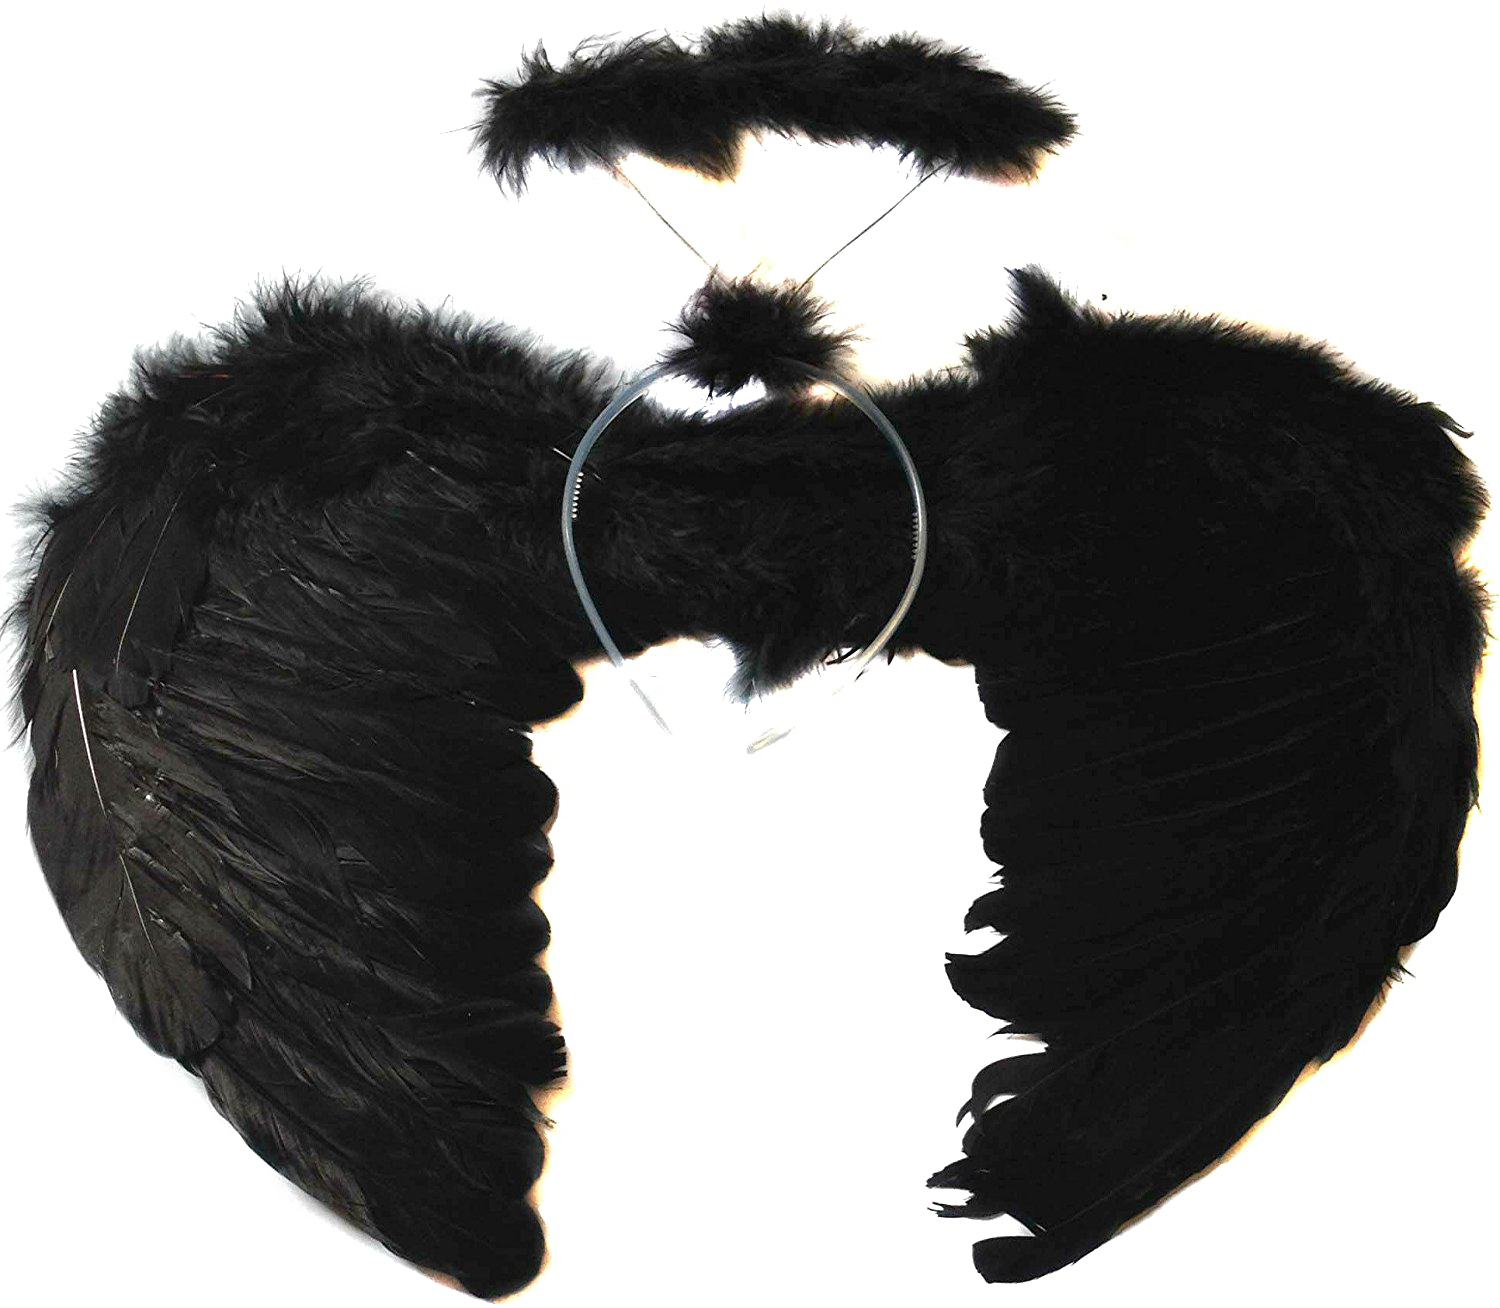 Imagen Transparente de las alas del ángel negro